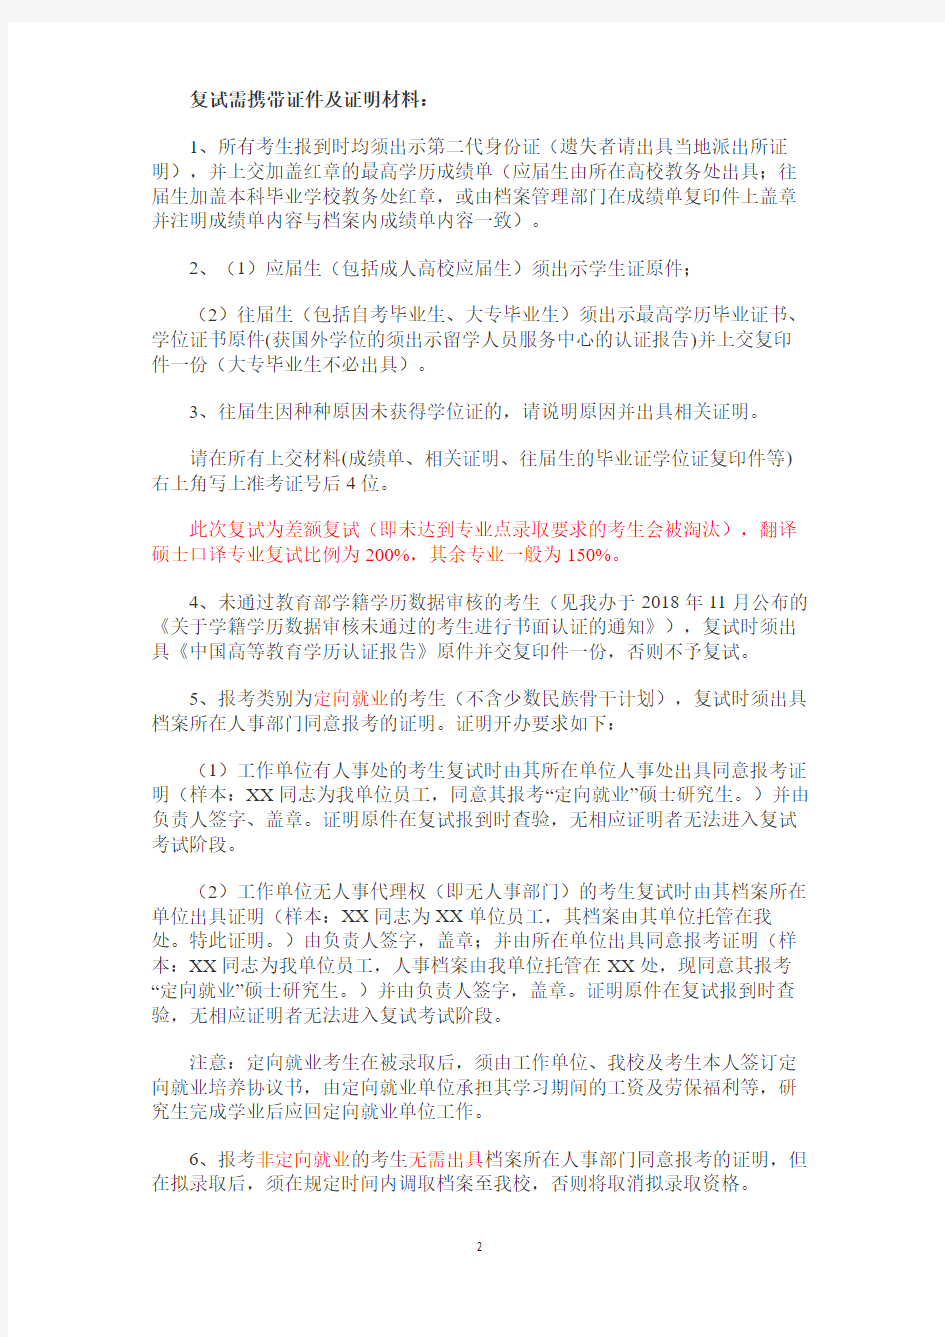 上海外国语大学2019年全国统考硕士一志愿考生复试工作办法.pdf